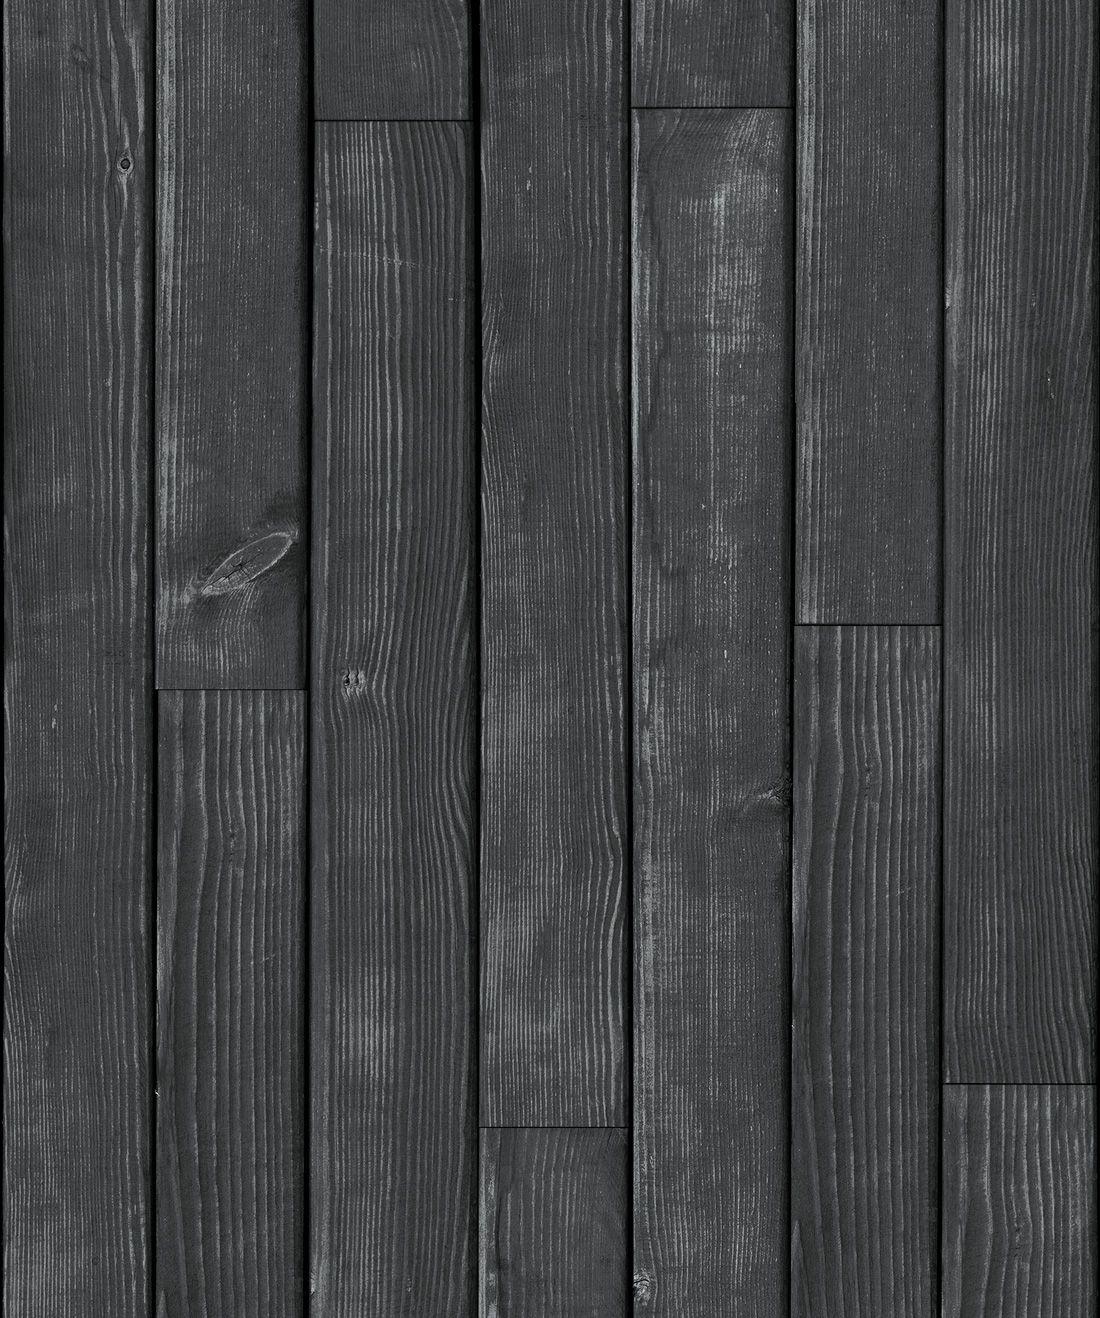 Hình nền bảng gỗ đen 1100x1318 • Tấm gỗ • Milton & King